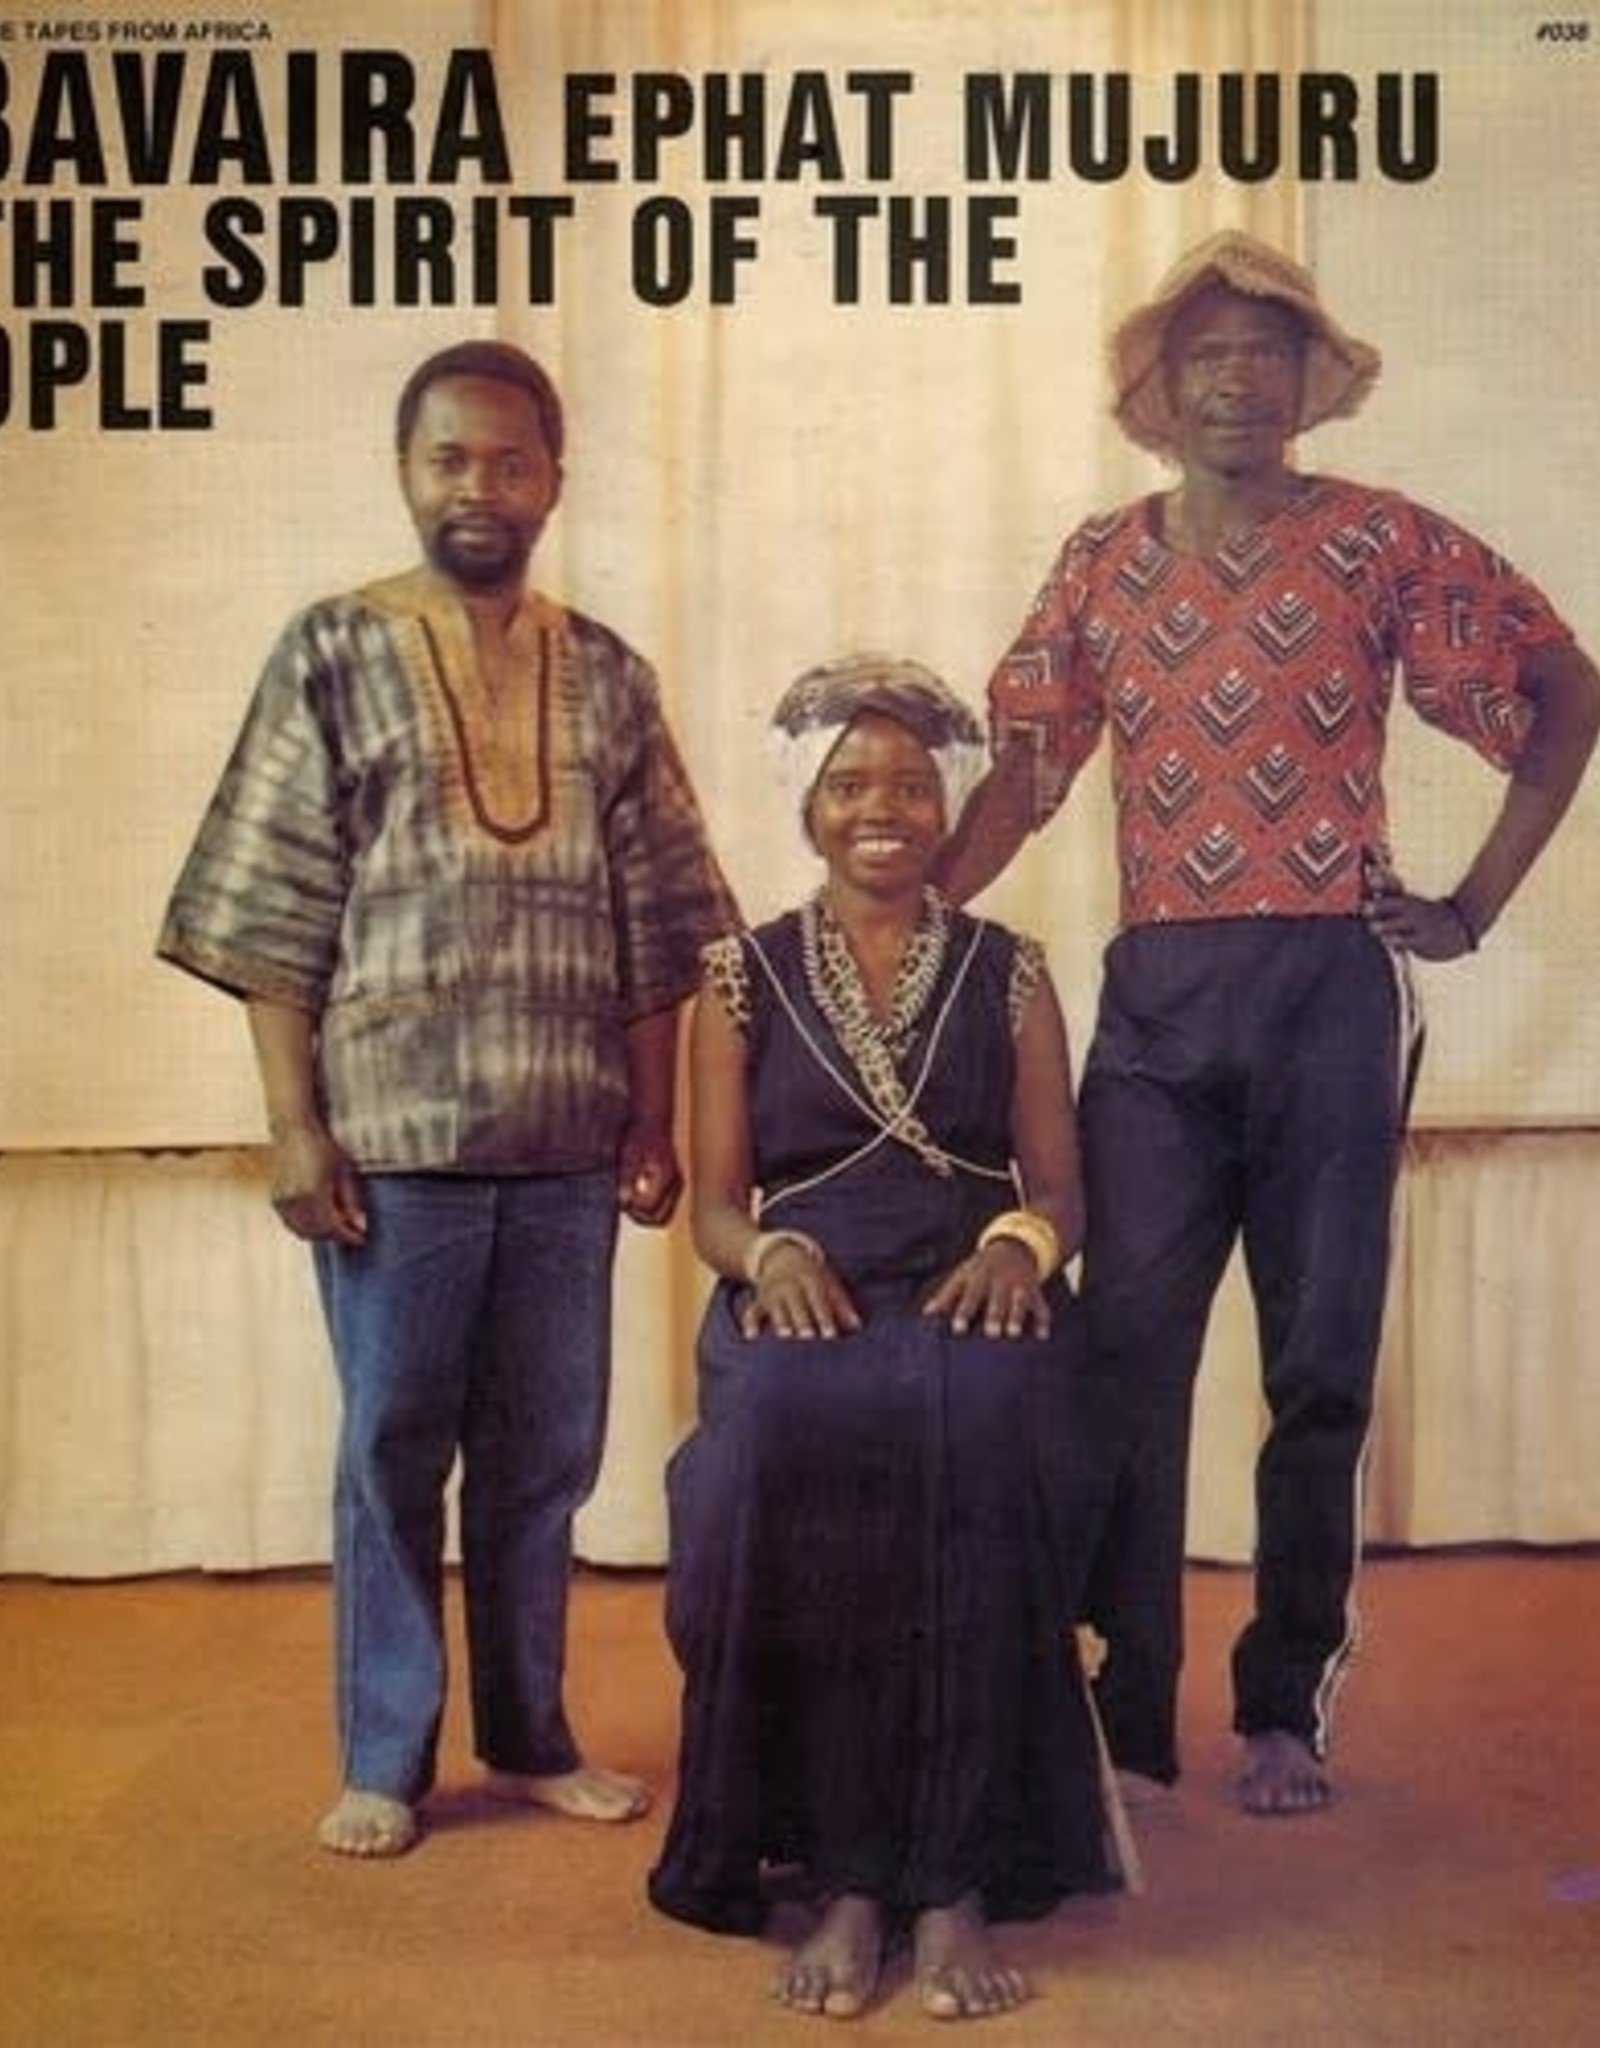 Ephat Mujuru & The Spirit Of The People - Mbavaira